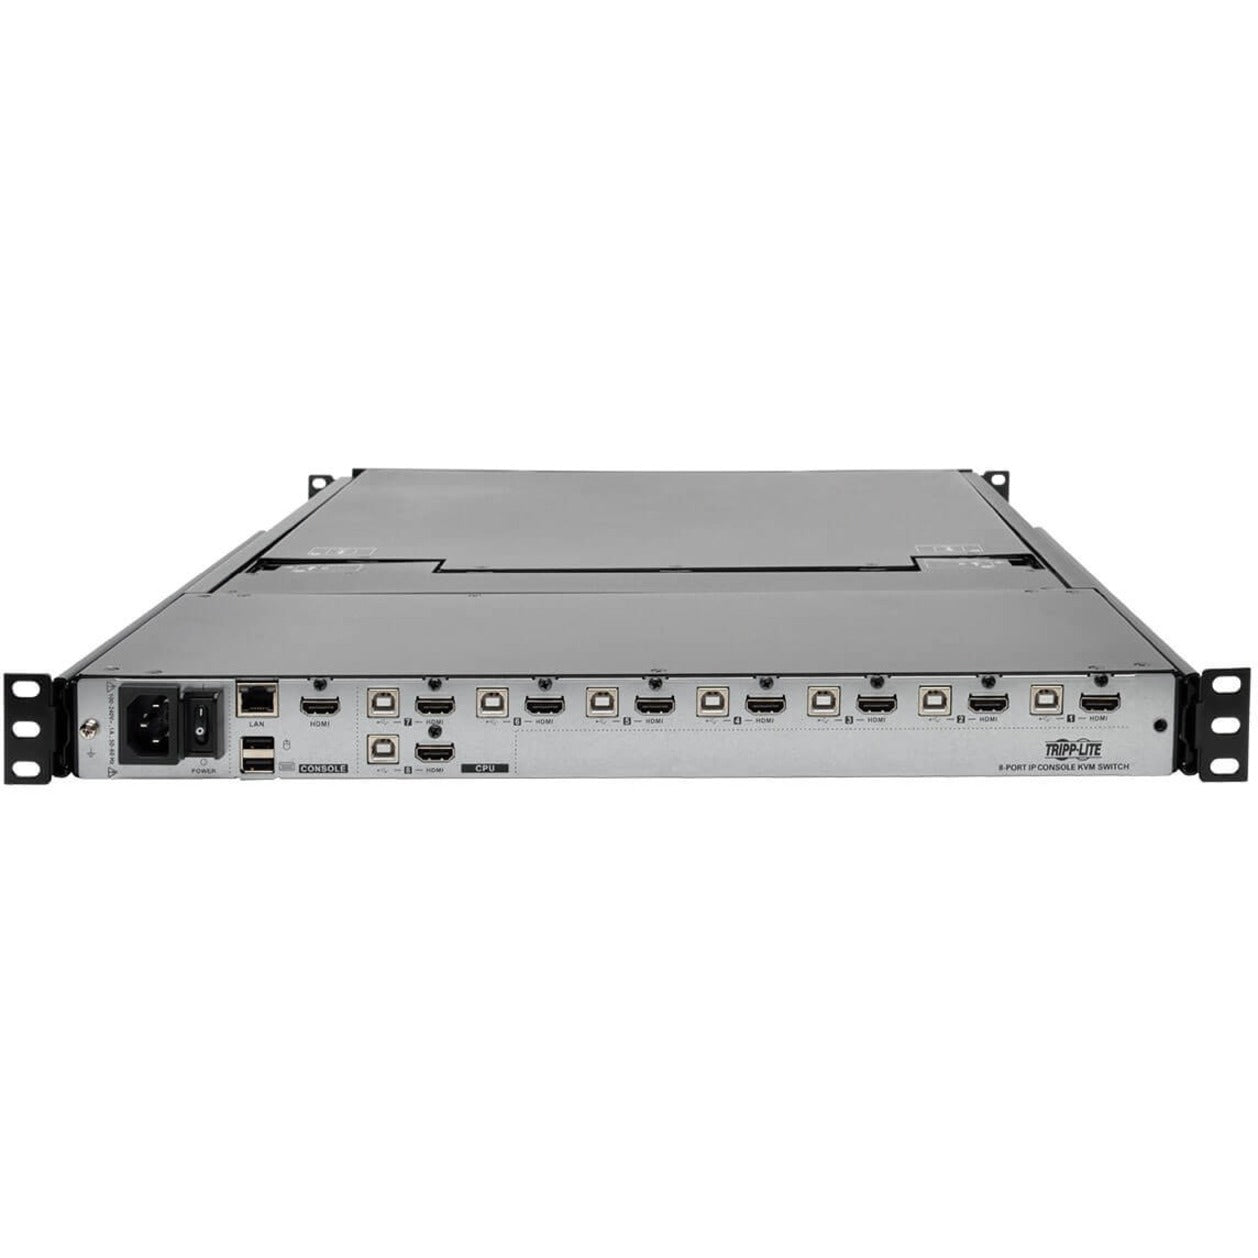 تريب لايت B030-008-17-IP NetDirector 8-Port 1U راك مونت كونسول HDMI KVM التبديل مع شاشة LCD بقياس 17 بوصة و IP، Full HD، لوحة تعمل باللمس، متوافق مع TAA تريب لايت ترجمة اسم العلامة التجارية: الجولة الخفيفة